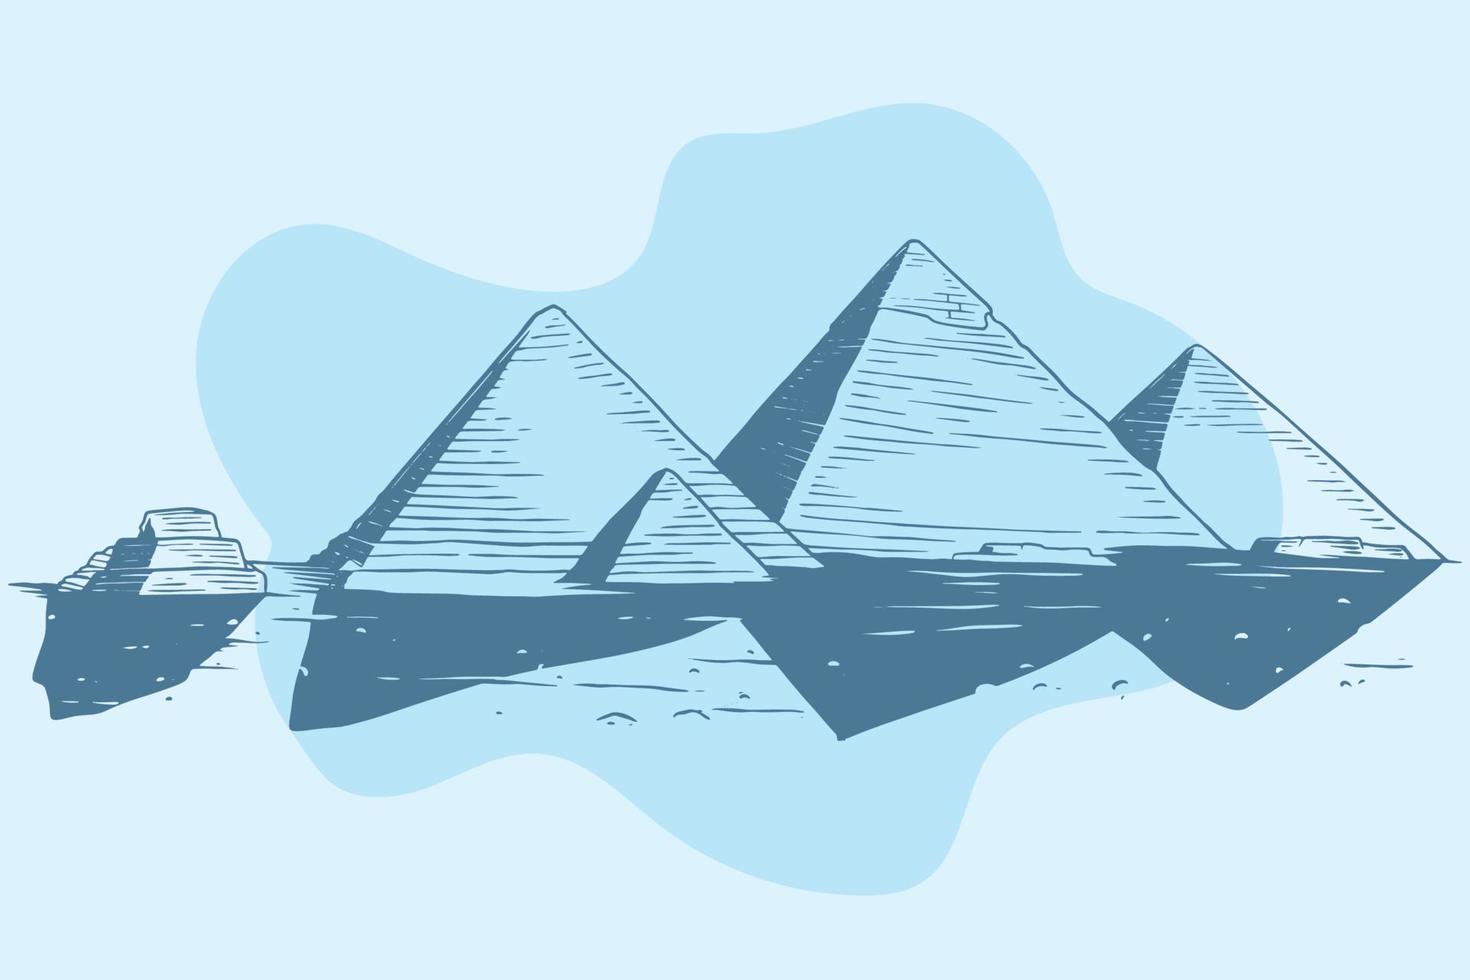 dibujado a mano del edificio de la historia antigua de la pirámide de giza egipto vector